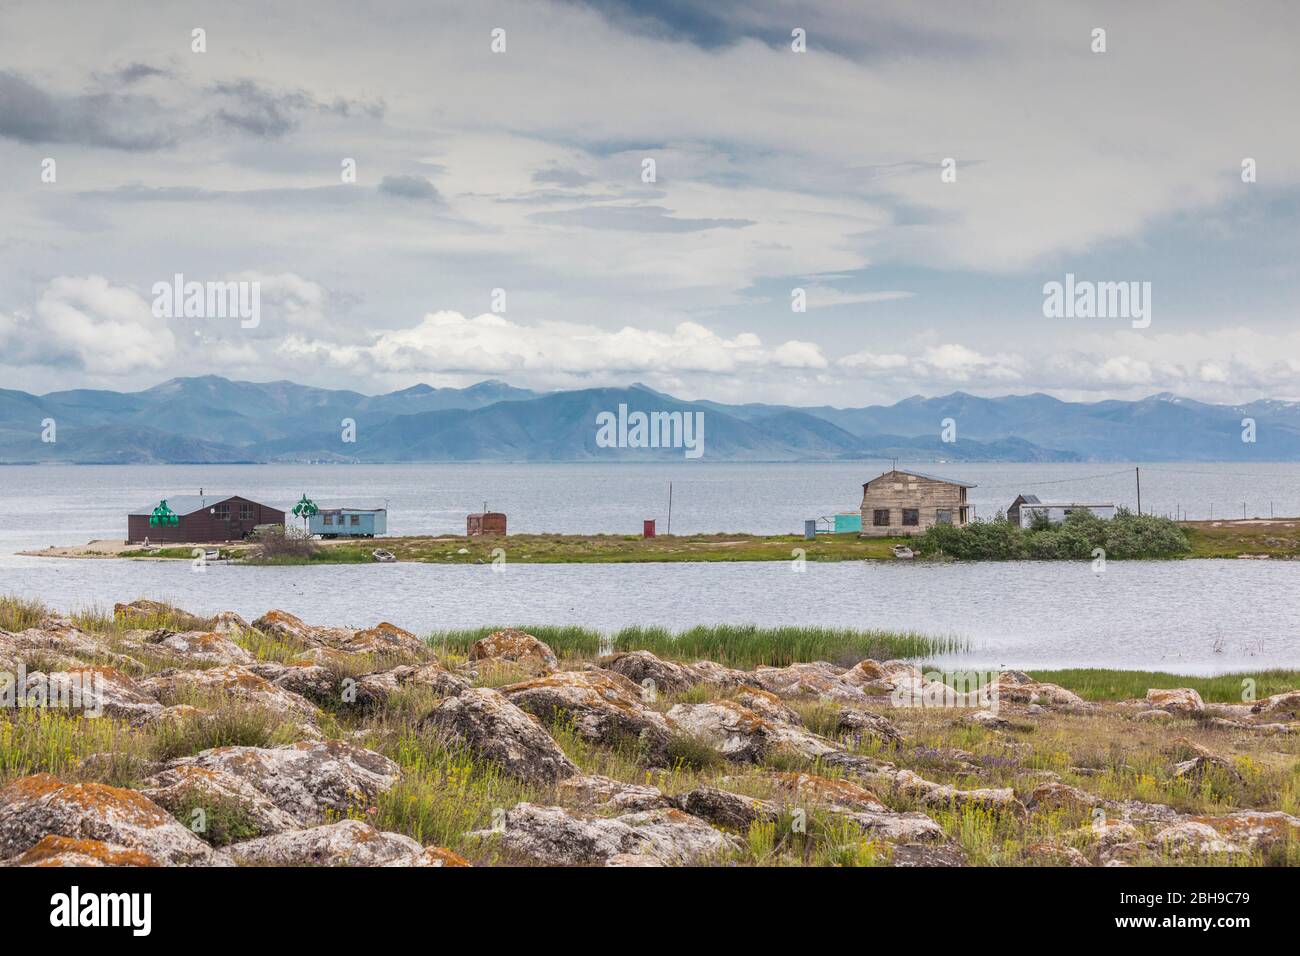 Armenia, Lake Sevan, Tzovazard, lake view Stock Photo